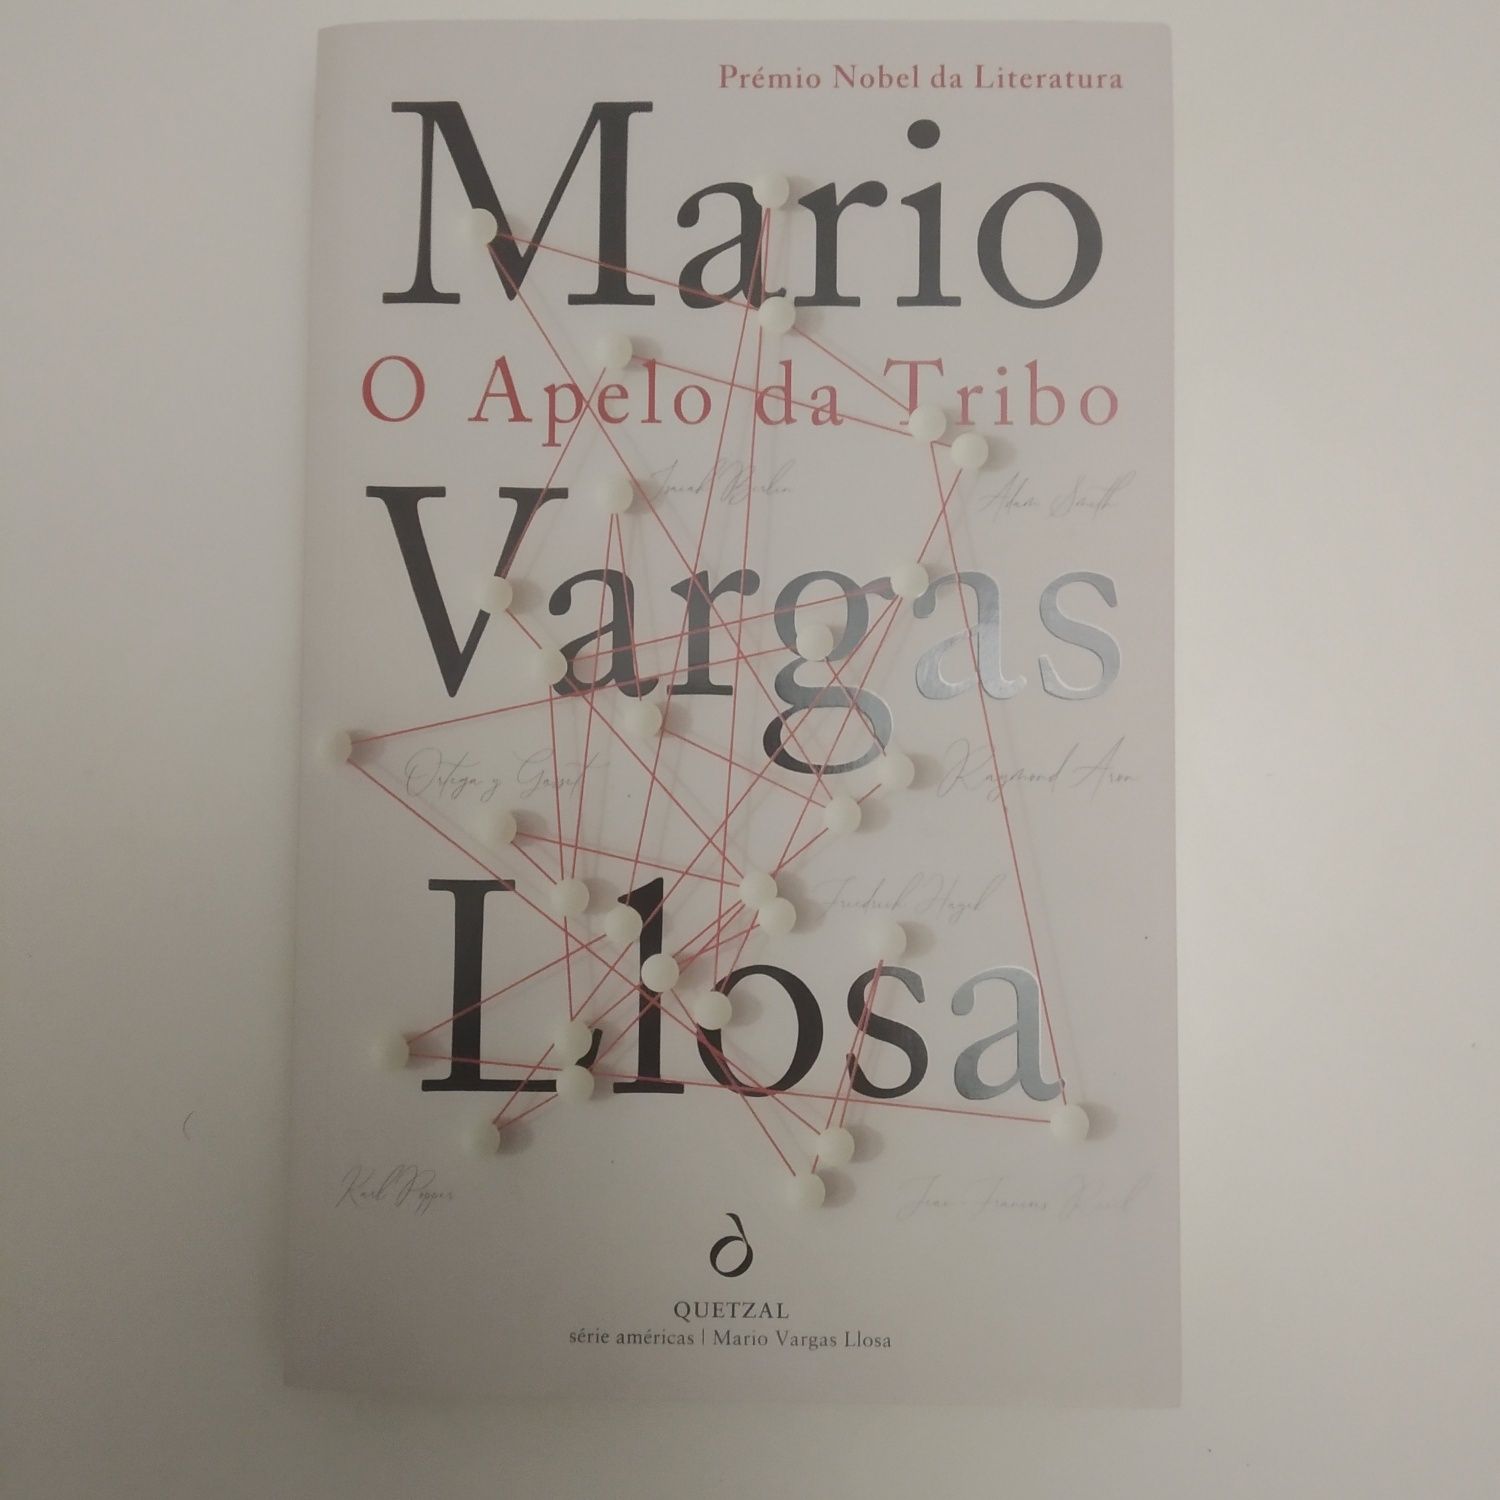 O Apelo da Tribo - Mario Vargas Llosa